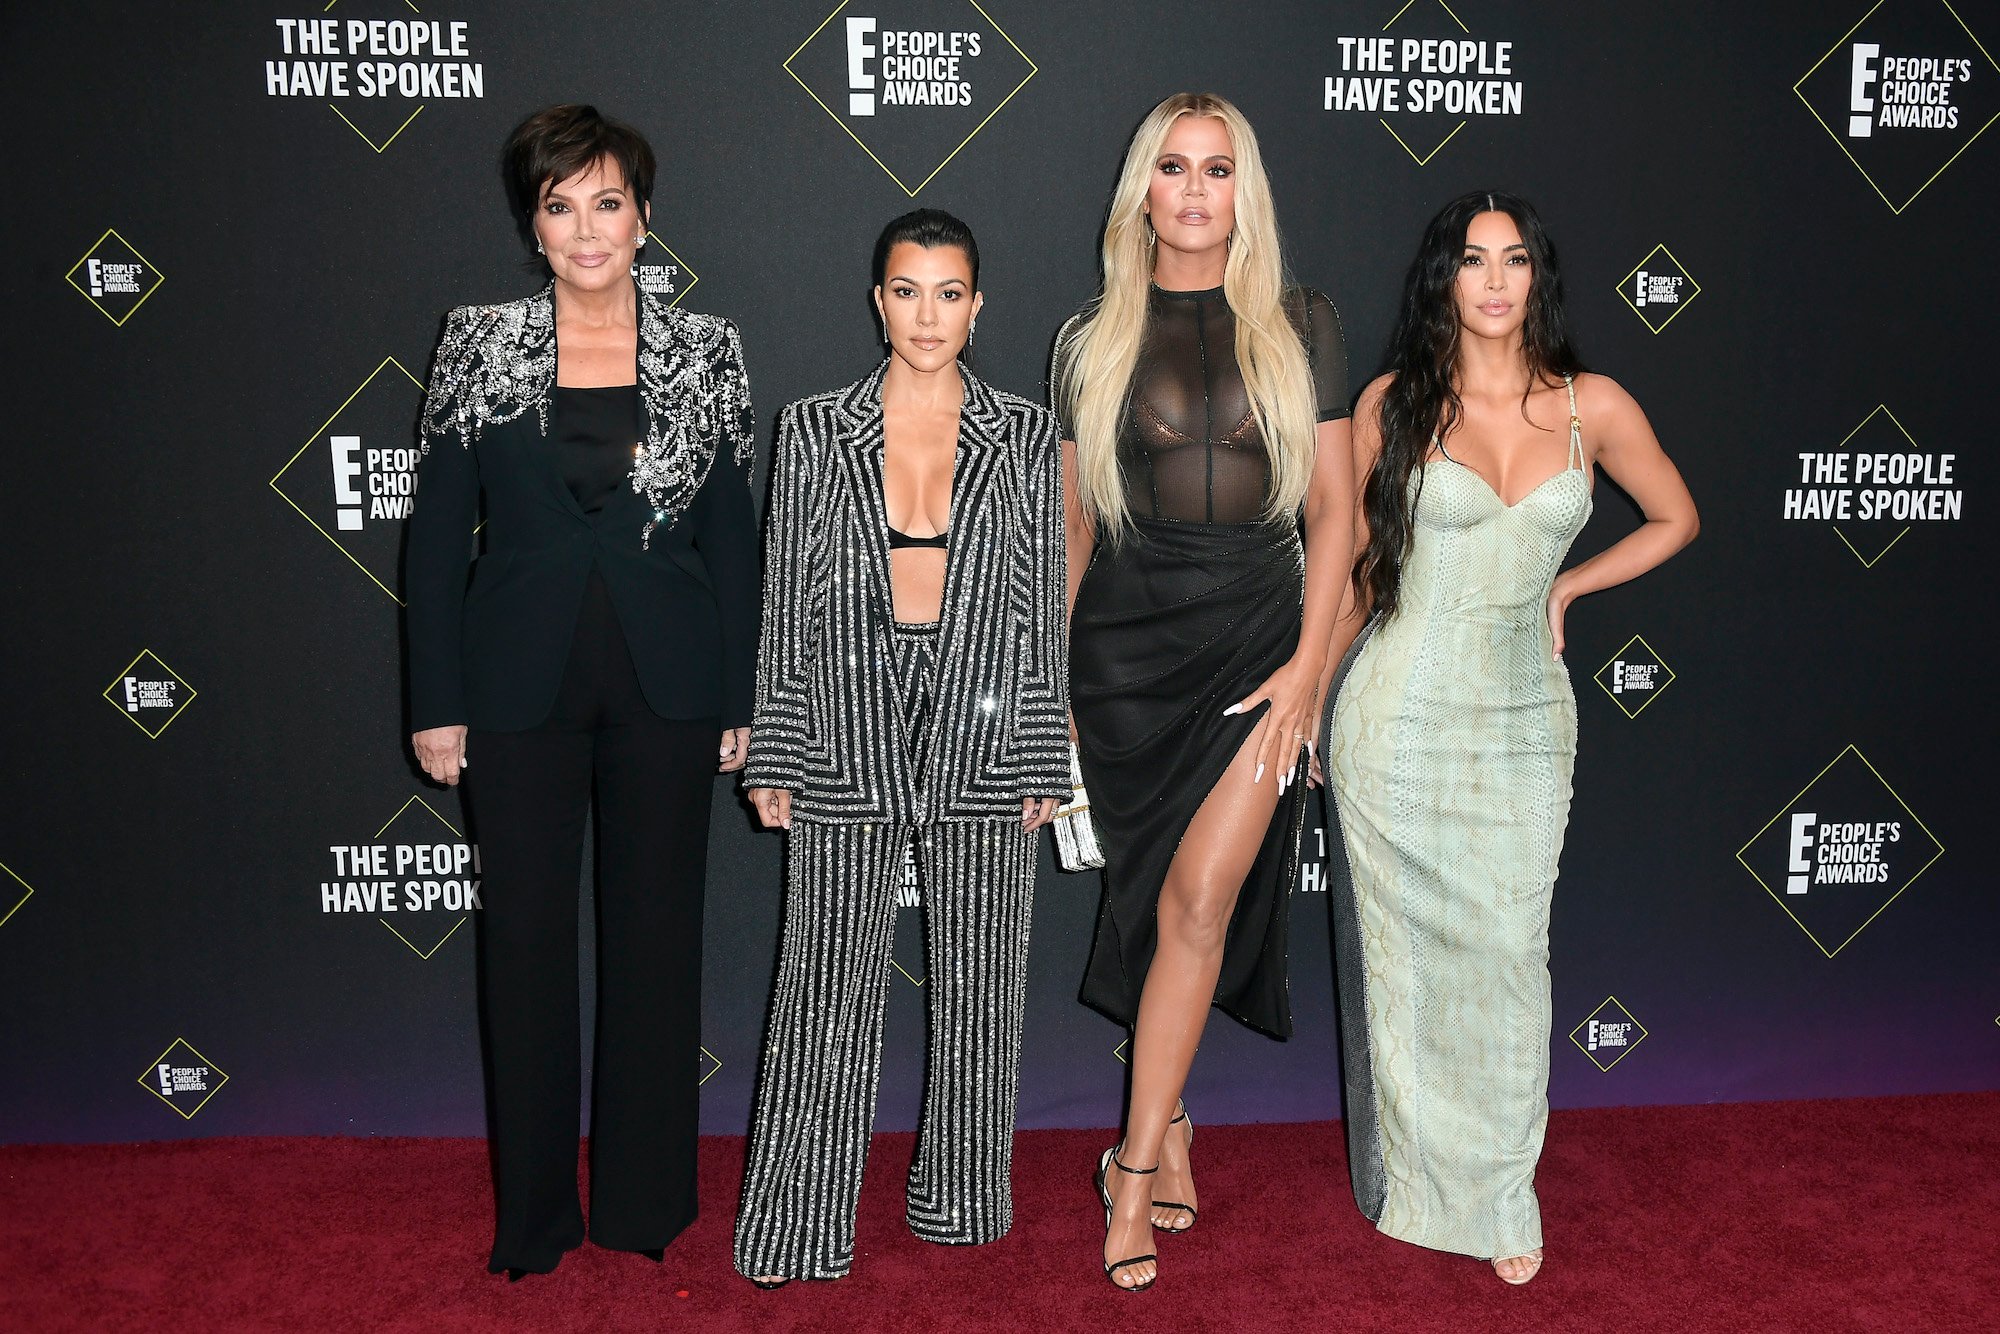 Kris Jenner, with Kourtney, Khloé, and Kim Kardashian